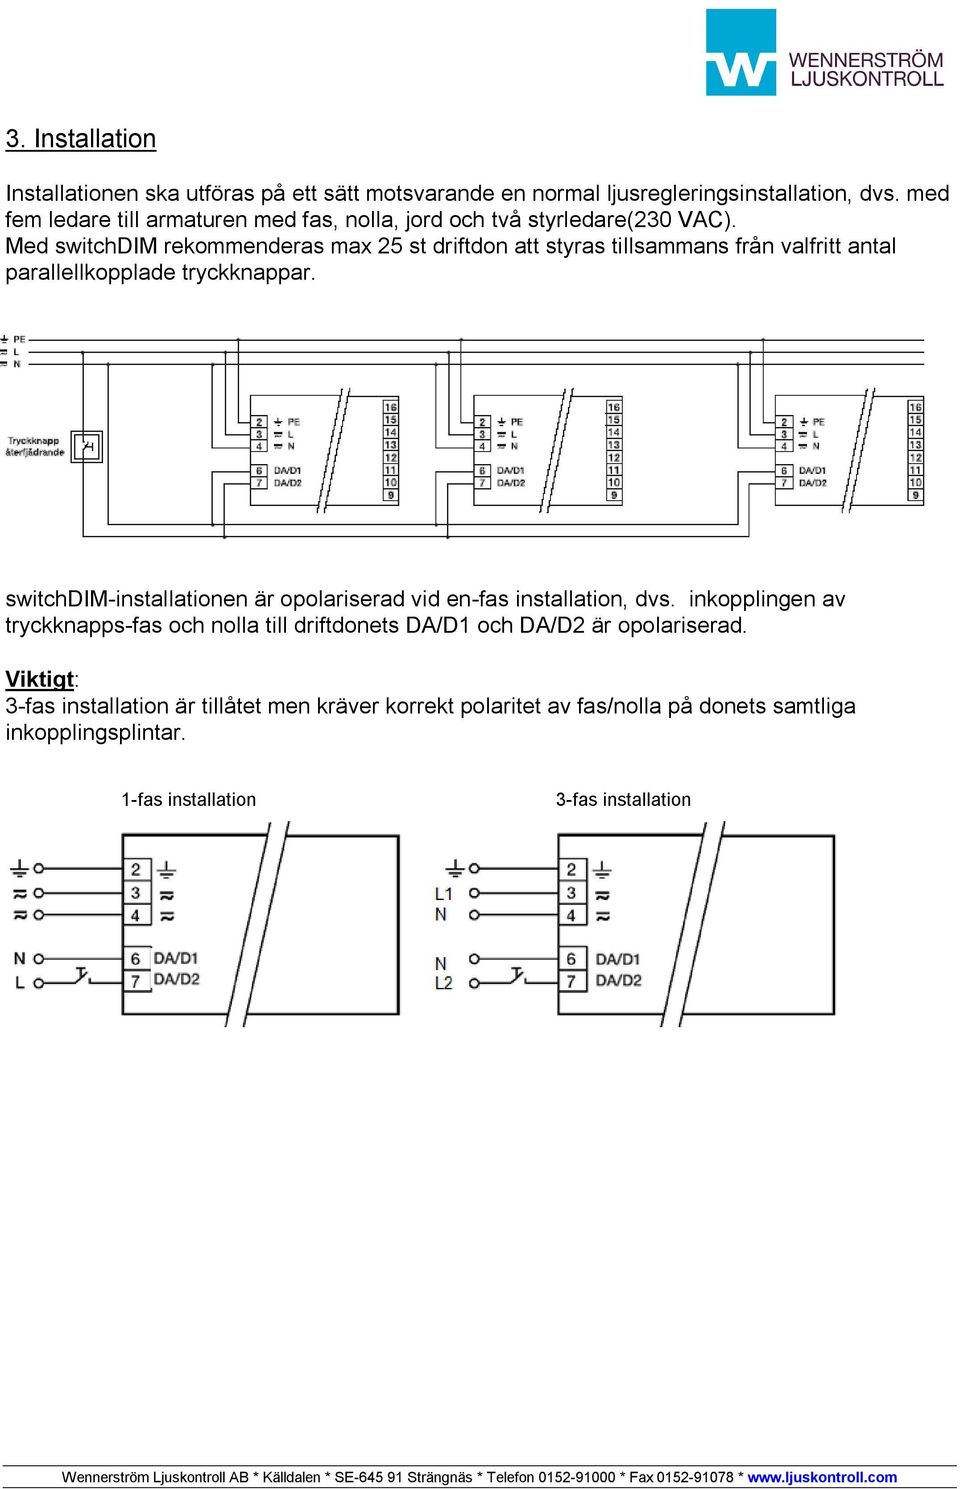 Med switchdim rekommenderas max 25 st driftdon att styras tillsammans från valfritt antal parallellkopplade tryckknappar.